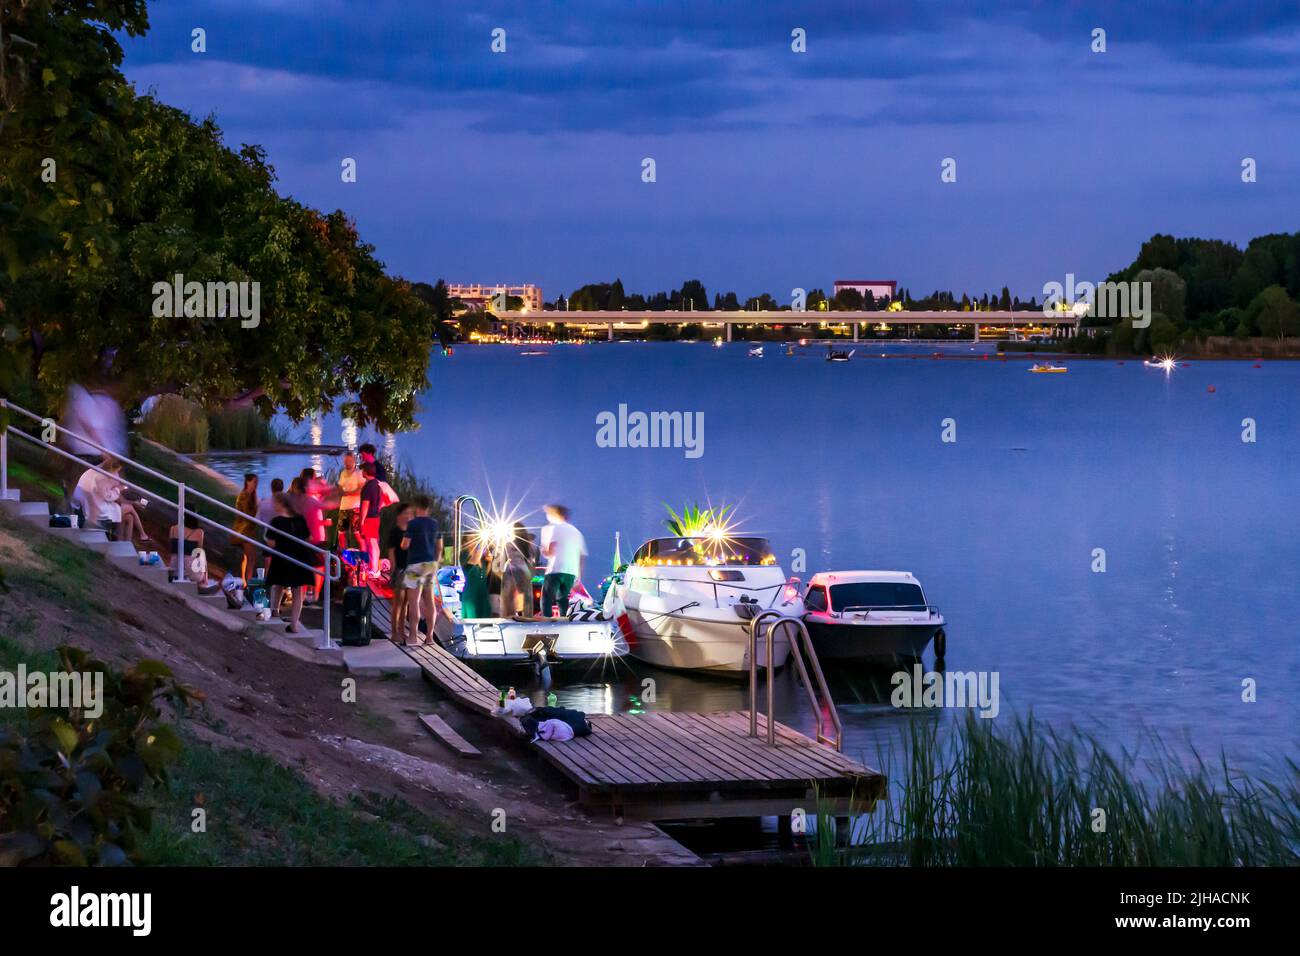 Wien, Vienne: lac oxbow Alte Donau (Vieux Danube), coucher de soleil, fête privée sur les bateaux en 22. Donaustadt, Wien, Autriche Banque D'Images